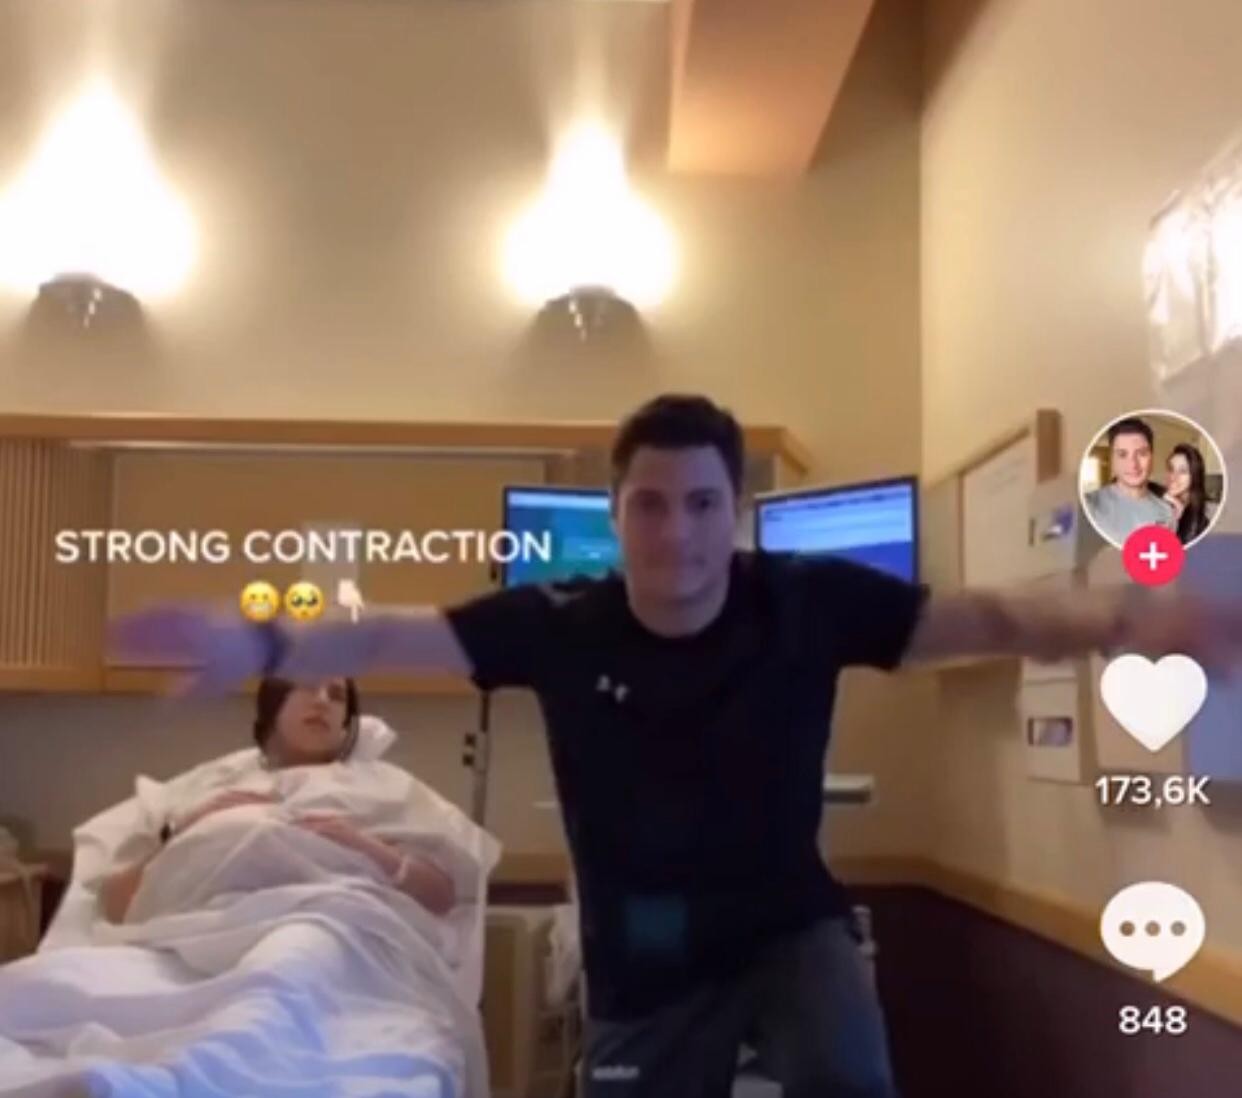 Pai resolve fazer um vídeo no TikTok durante parto da esposa (Foto: reprodução TikTok)